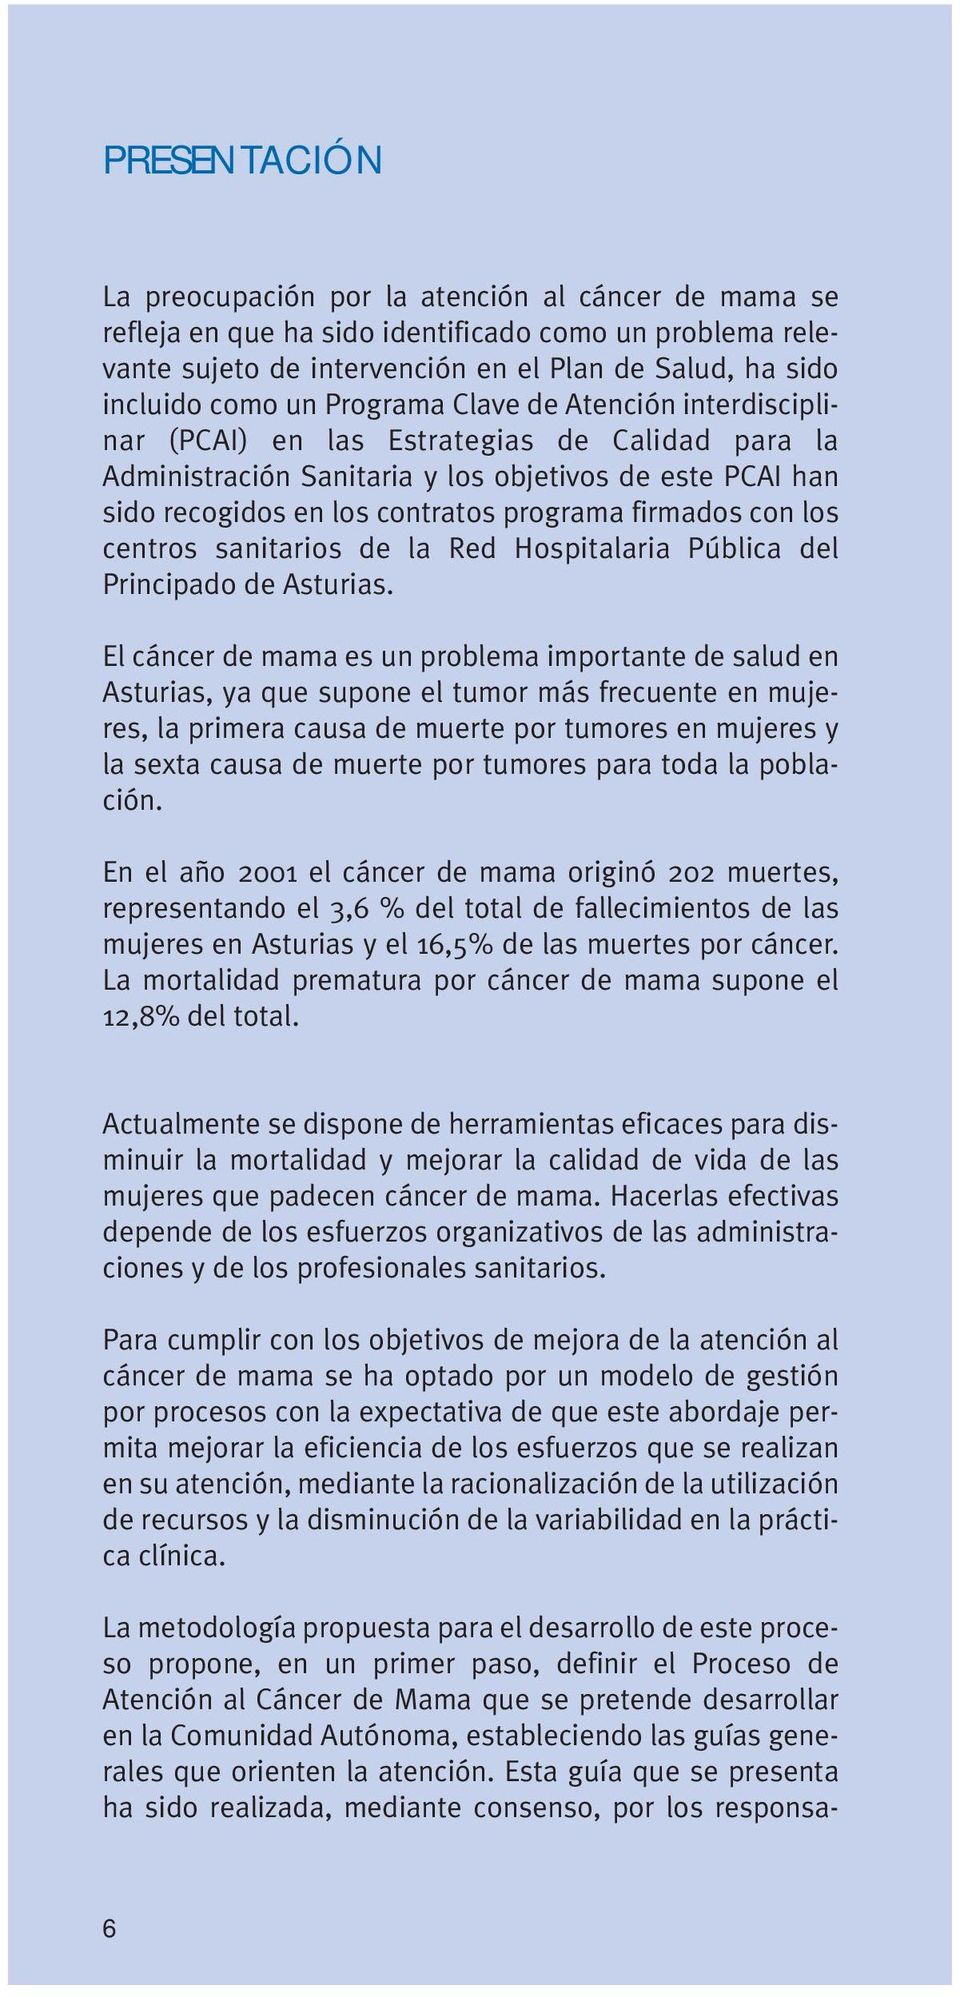 con los centros sanitarios de la Red Hospitalaria Pública del Principado de Asturias.